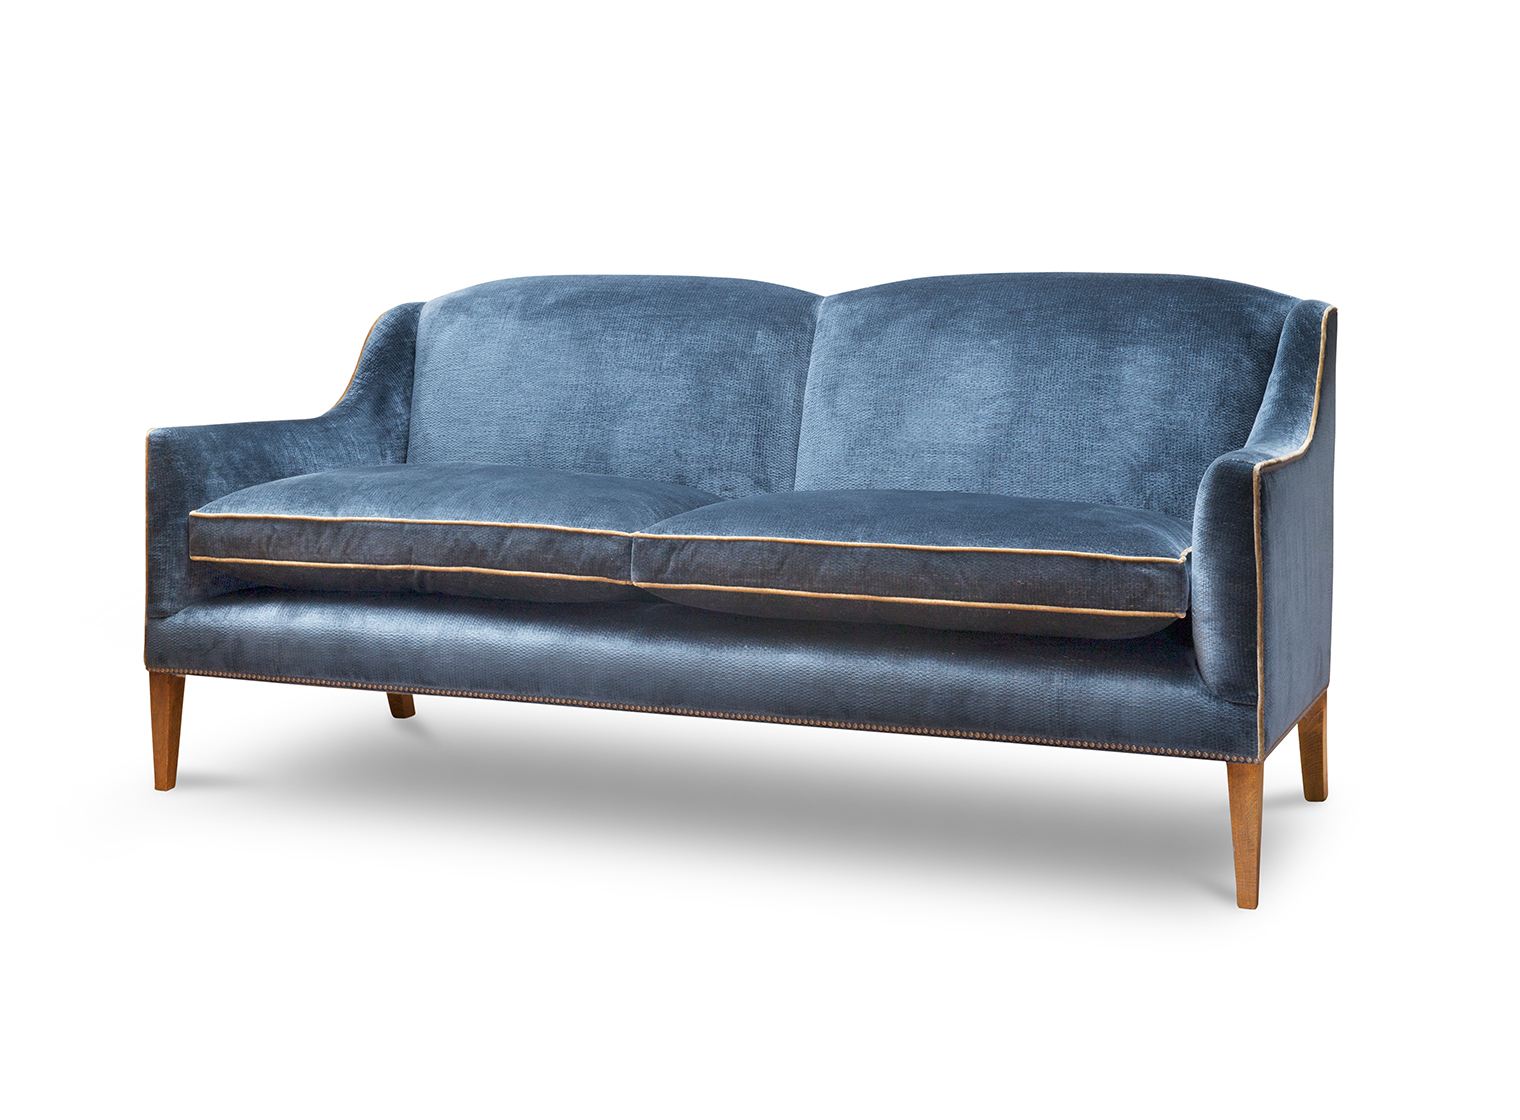 Edgar 2.5 seater sofa in Troilus velvet - Flint blue - Beaumont & Fletcher